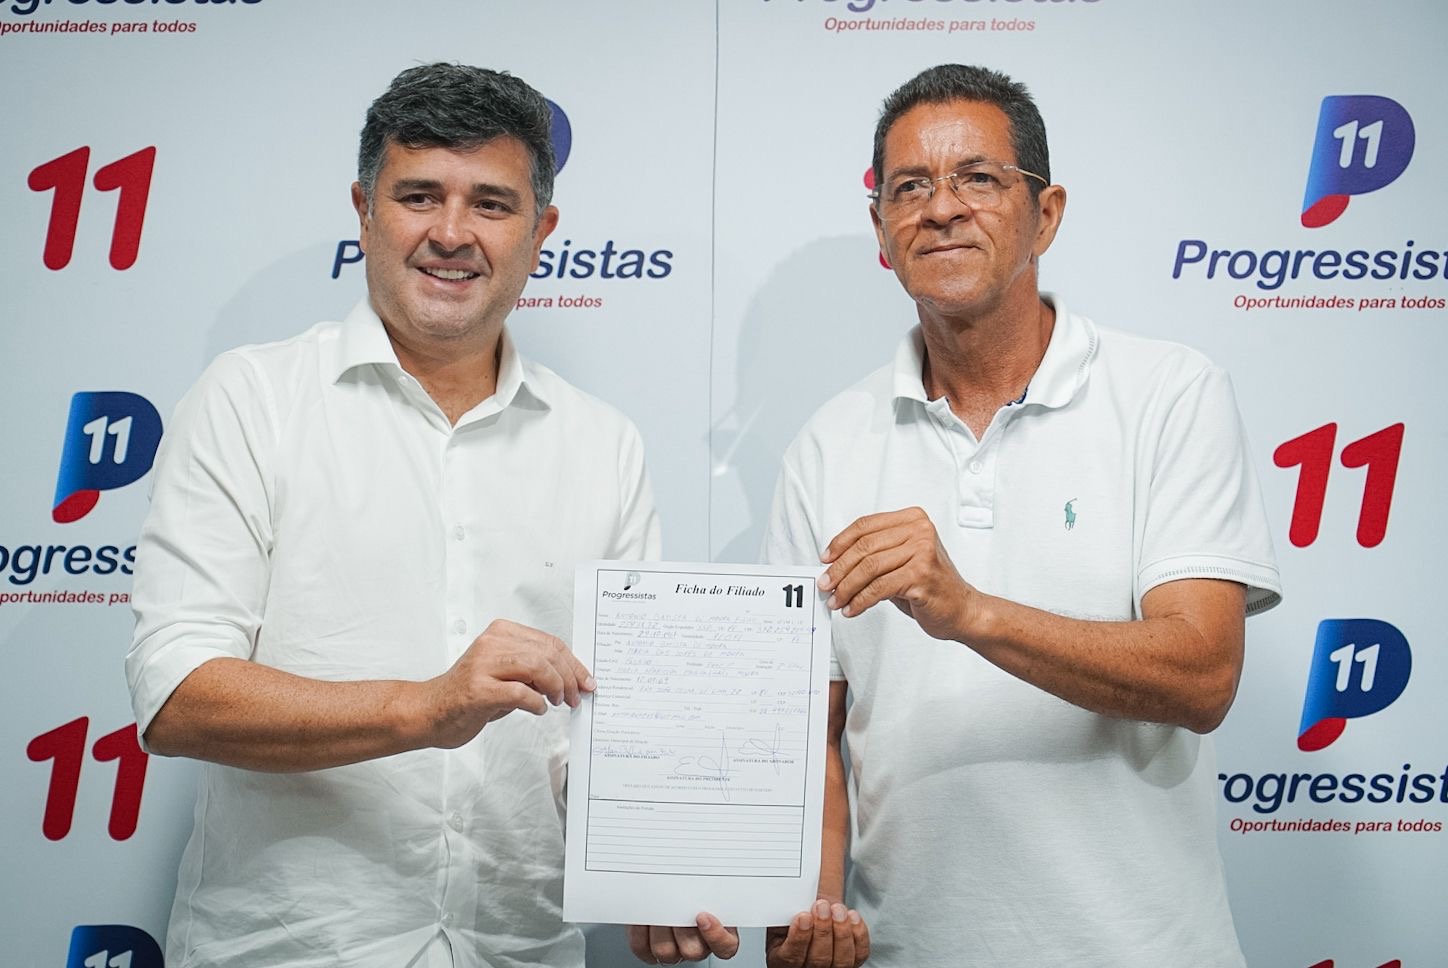 Toinho da União se filia no PP e consolida pré-candidatura a vereador do Recife pelo partido com apoio dos deputados federais Eduardo e Lula da Fonte